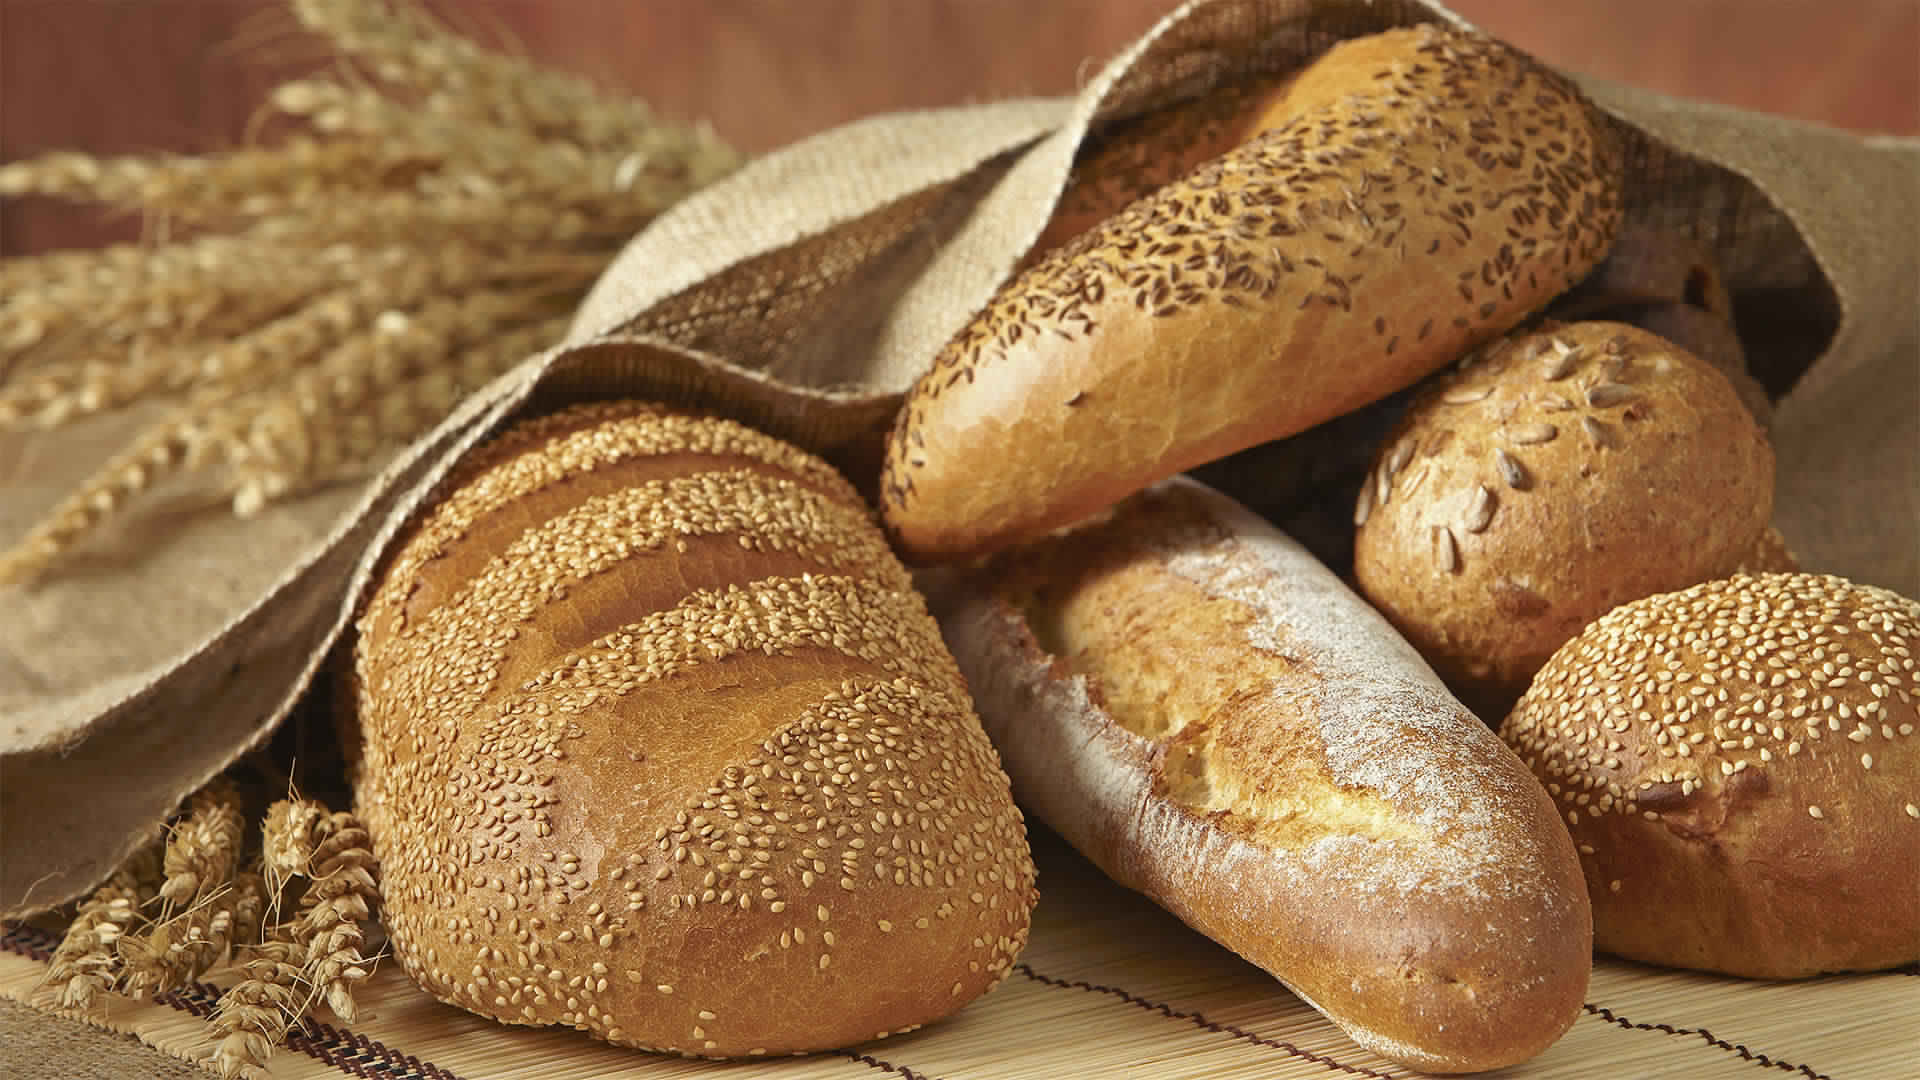 فوائد الخبز الأسمر و أضرار الخبز الأبيض